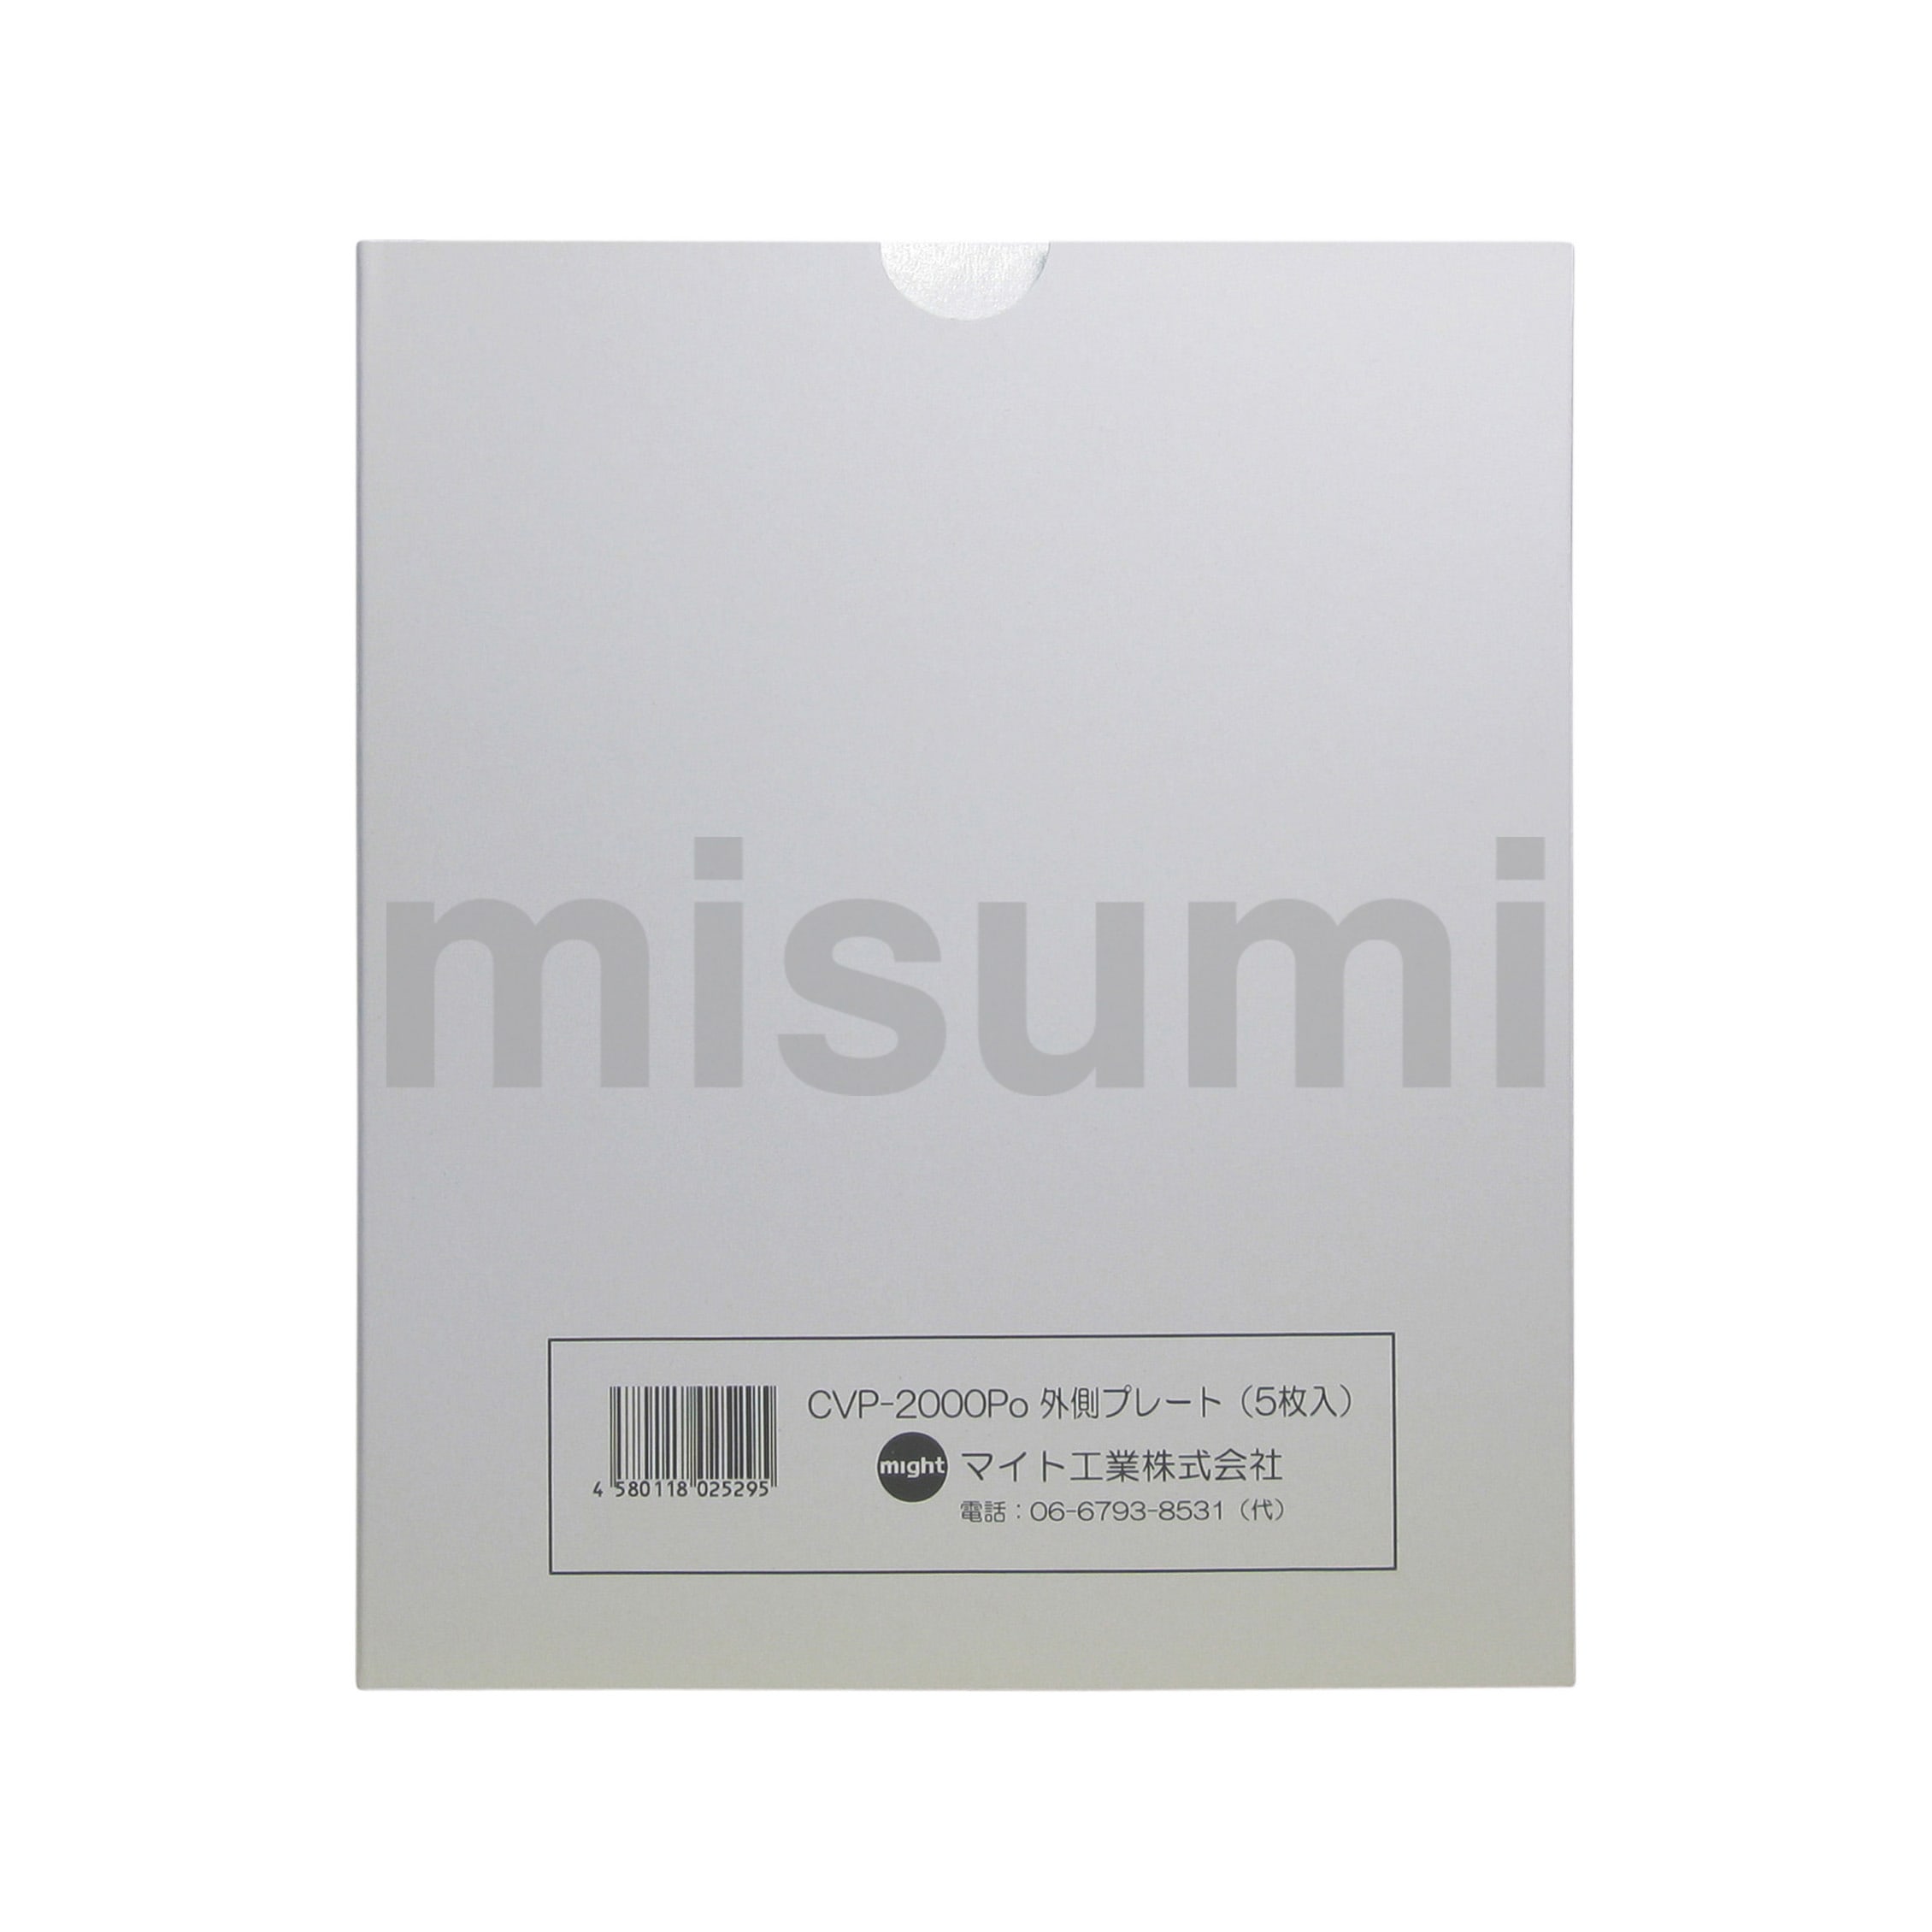 CVP-01S 溶接面 レインボーマスクシリーズ用カバープレート マイト工業 MISUMI(ミスミ)